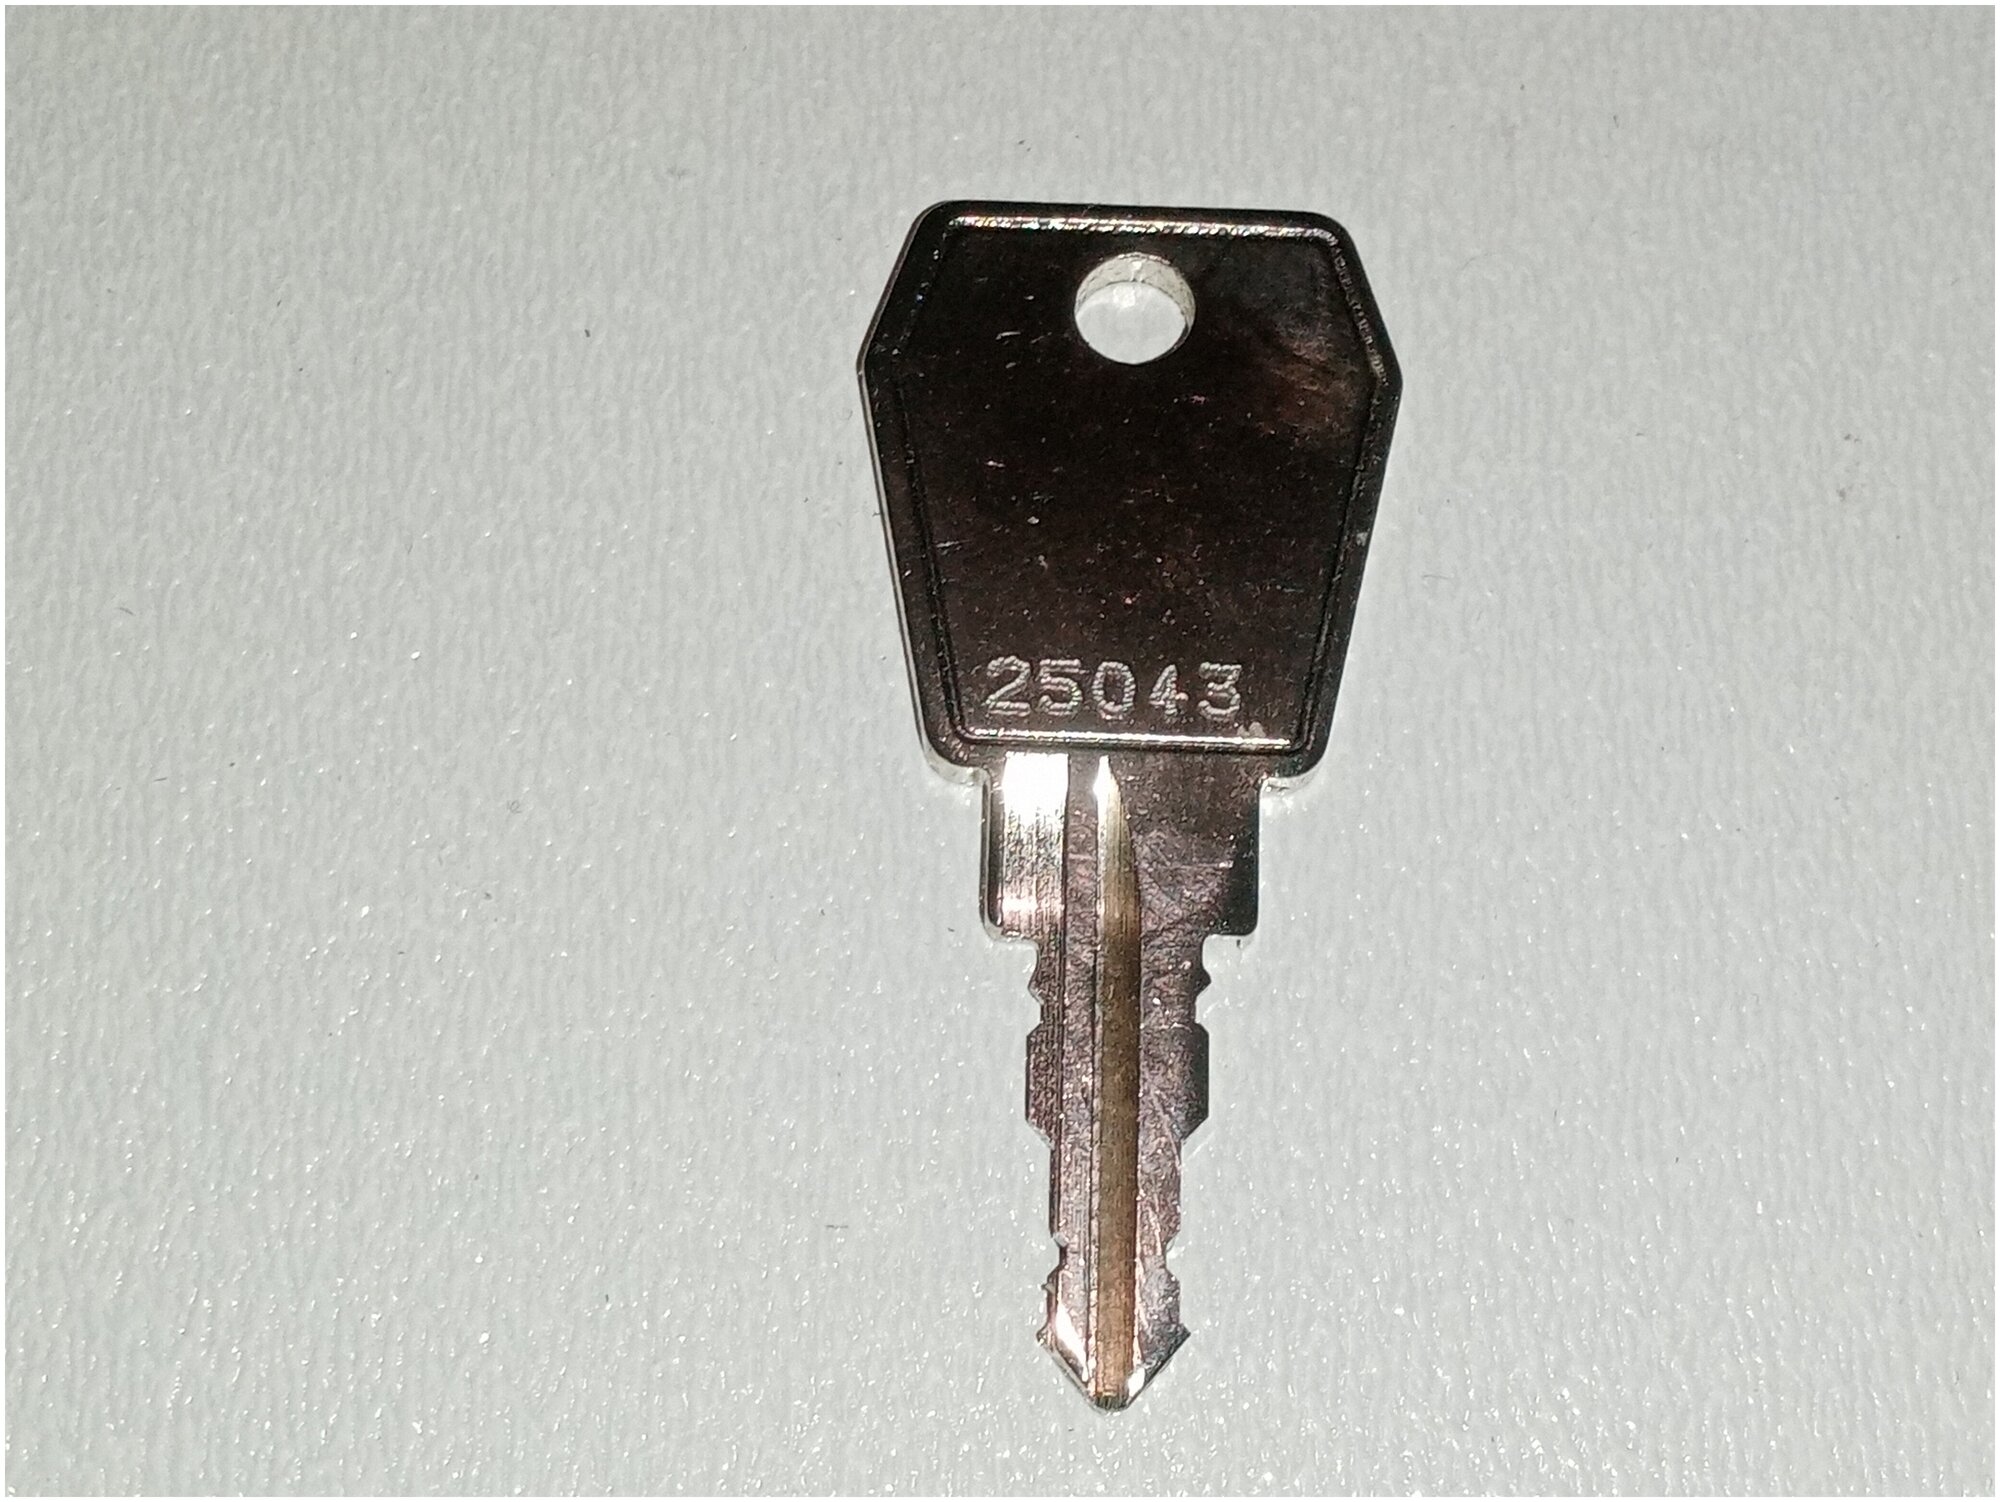 Ключ личины Автобокса-Багажника Euro Locks №25043